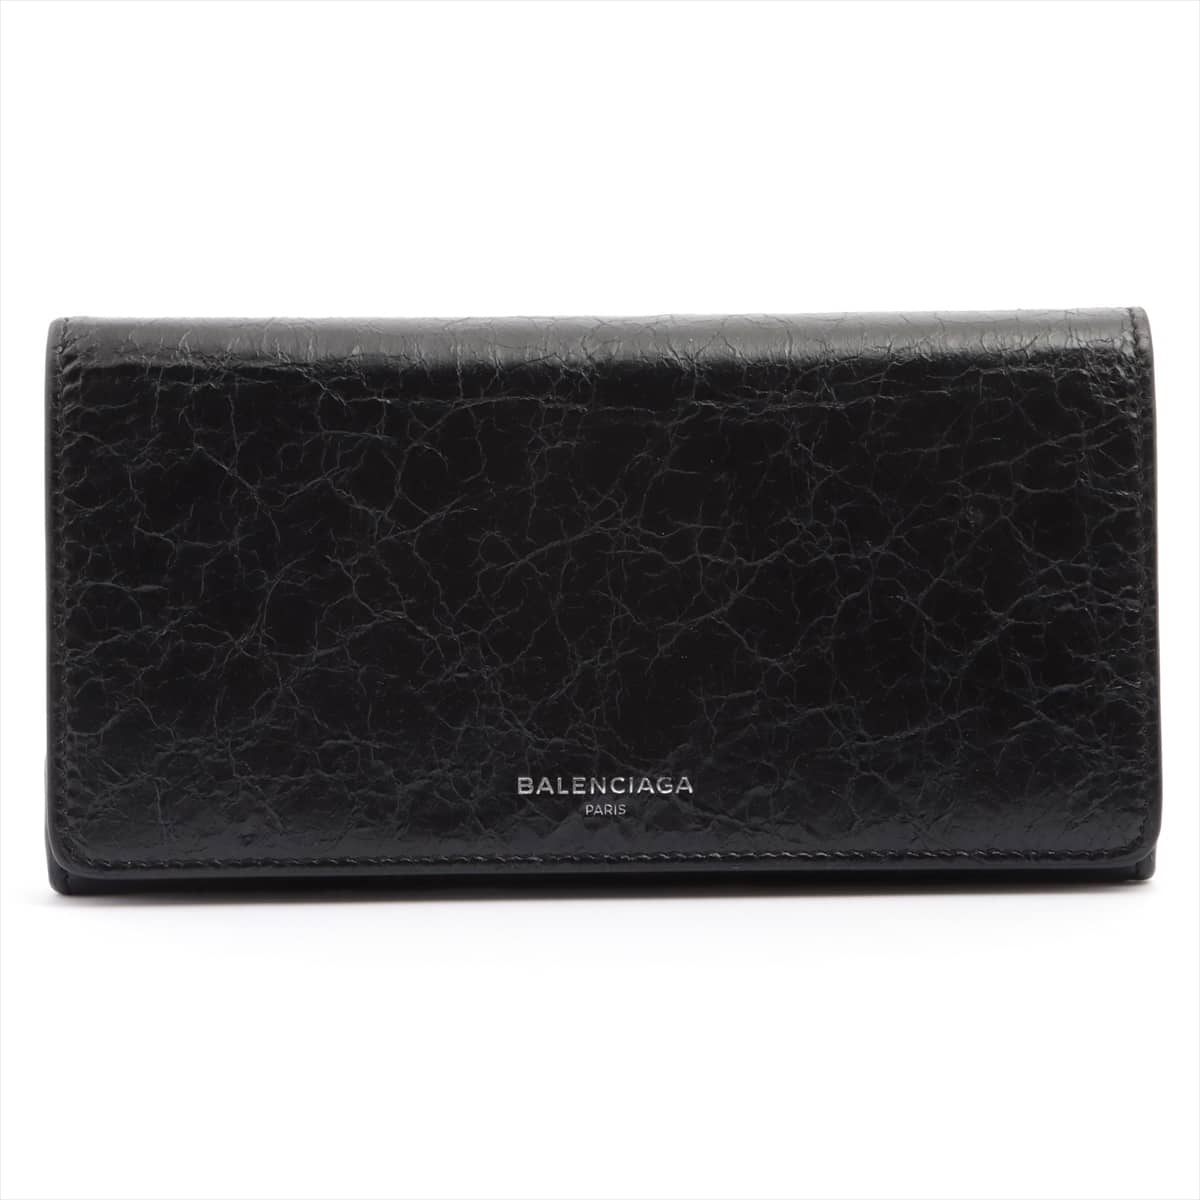 Balenciaga 542008 Leather Wallet Black